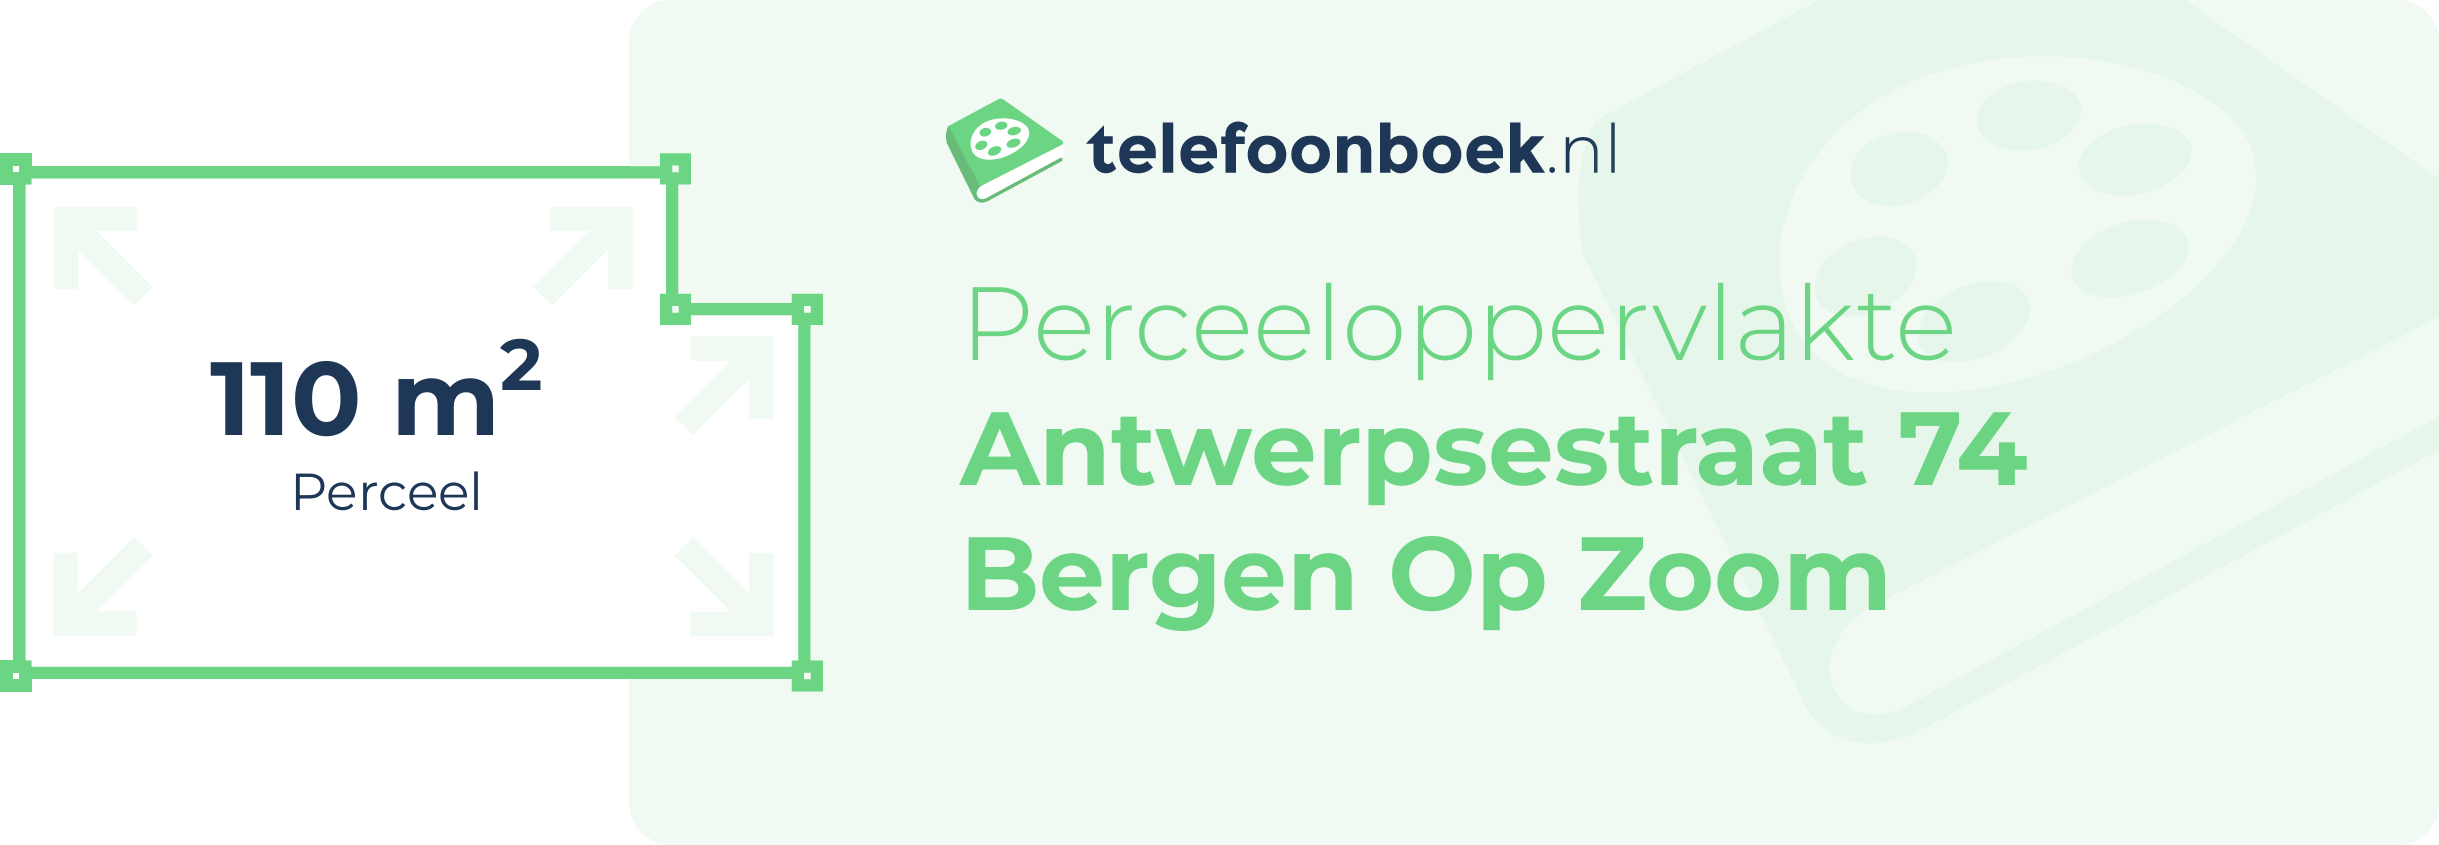 Perceeloppervlakte Antwerpsestraat 74 Bergen Op Zoom